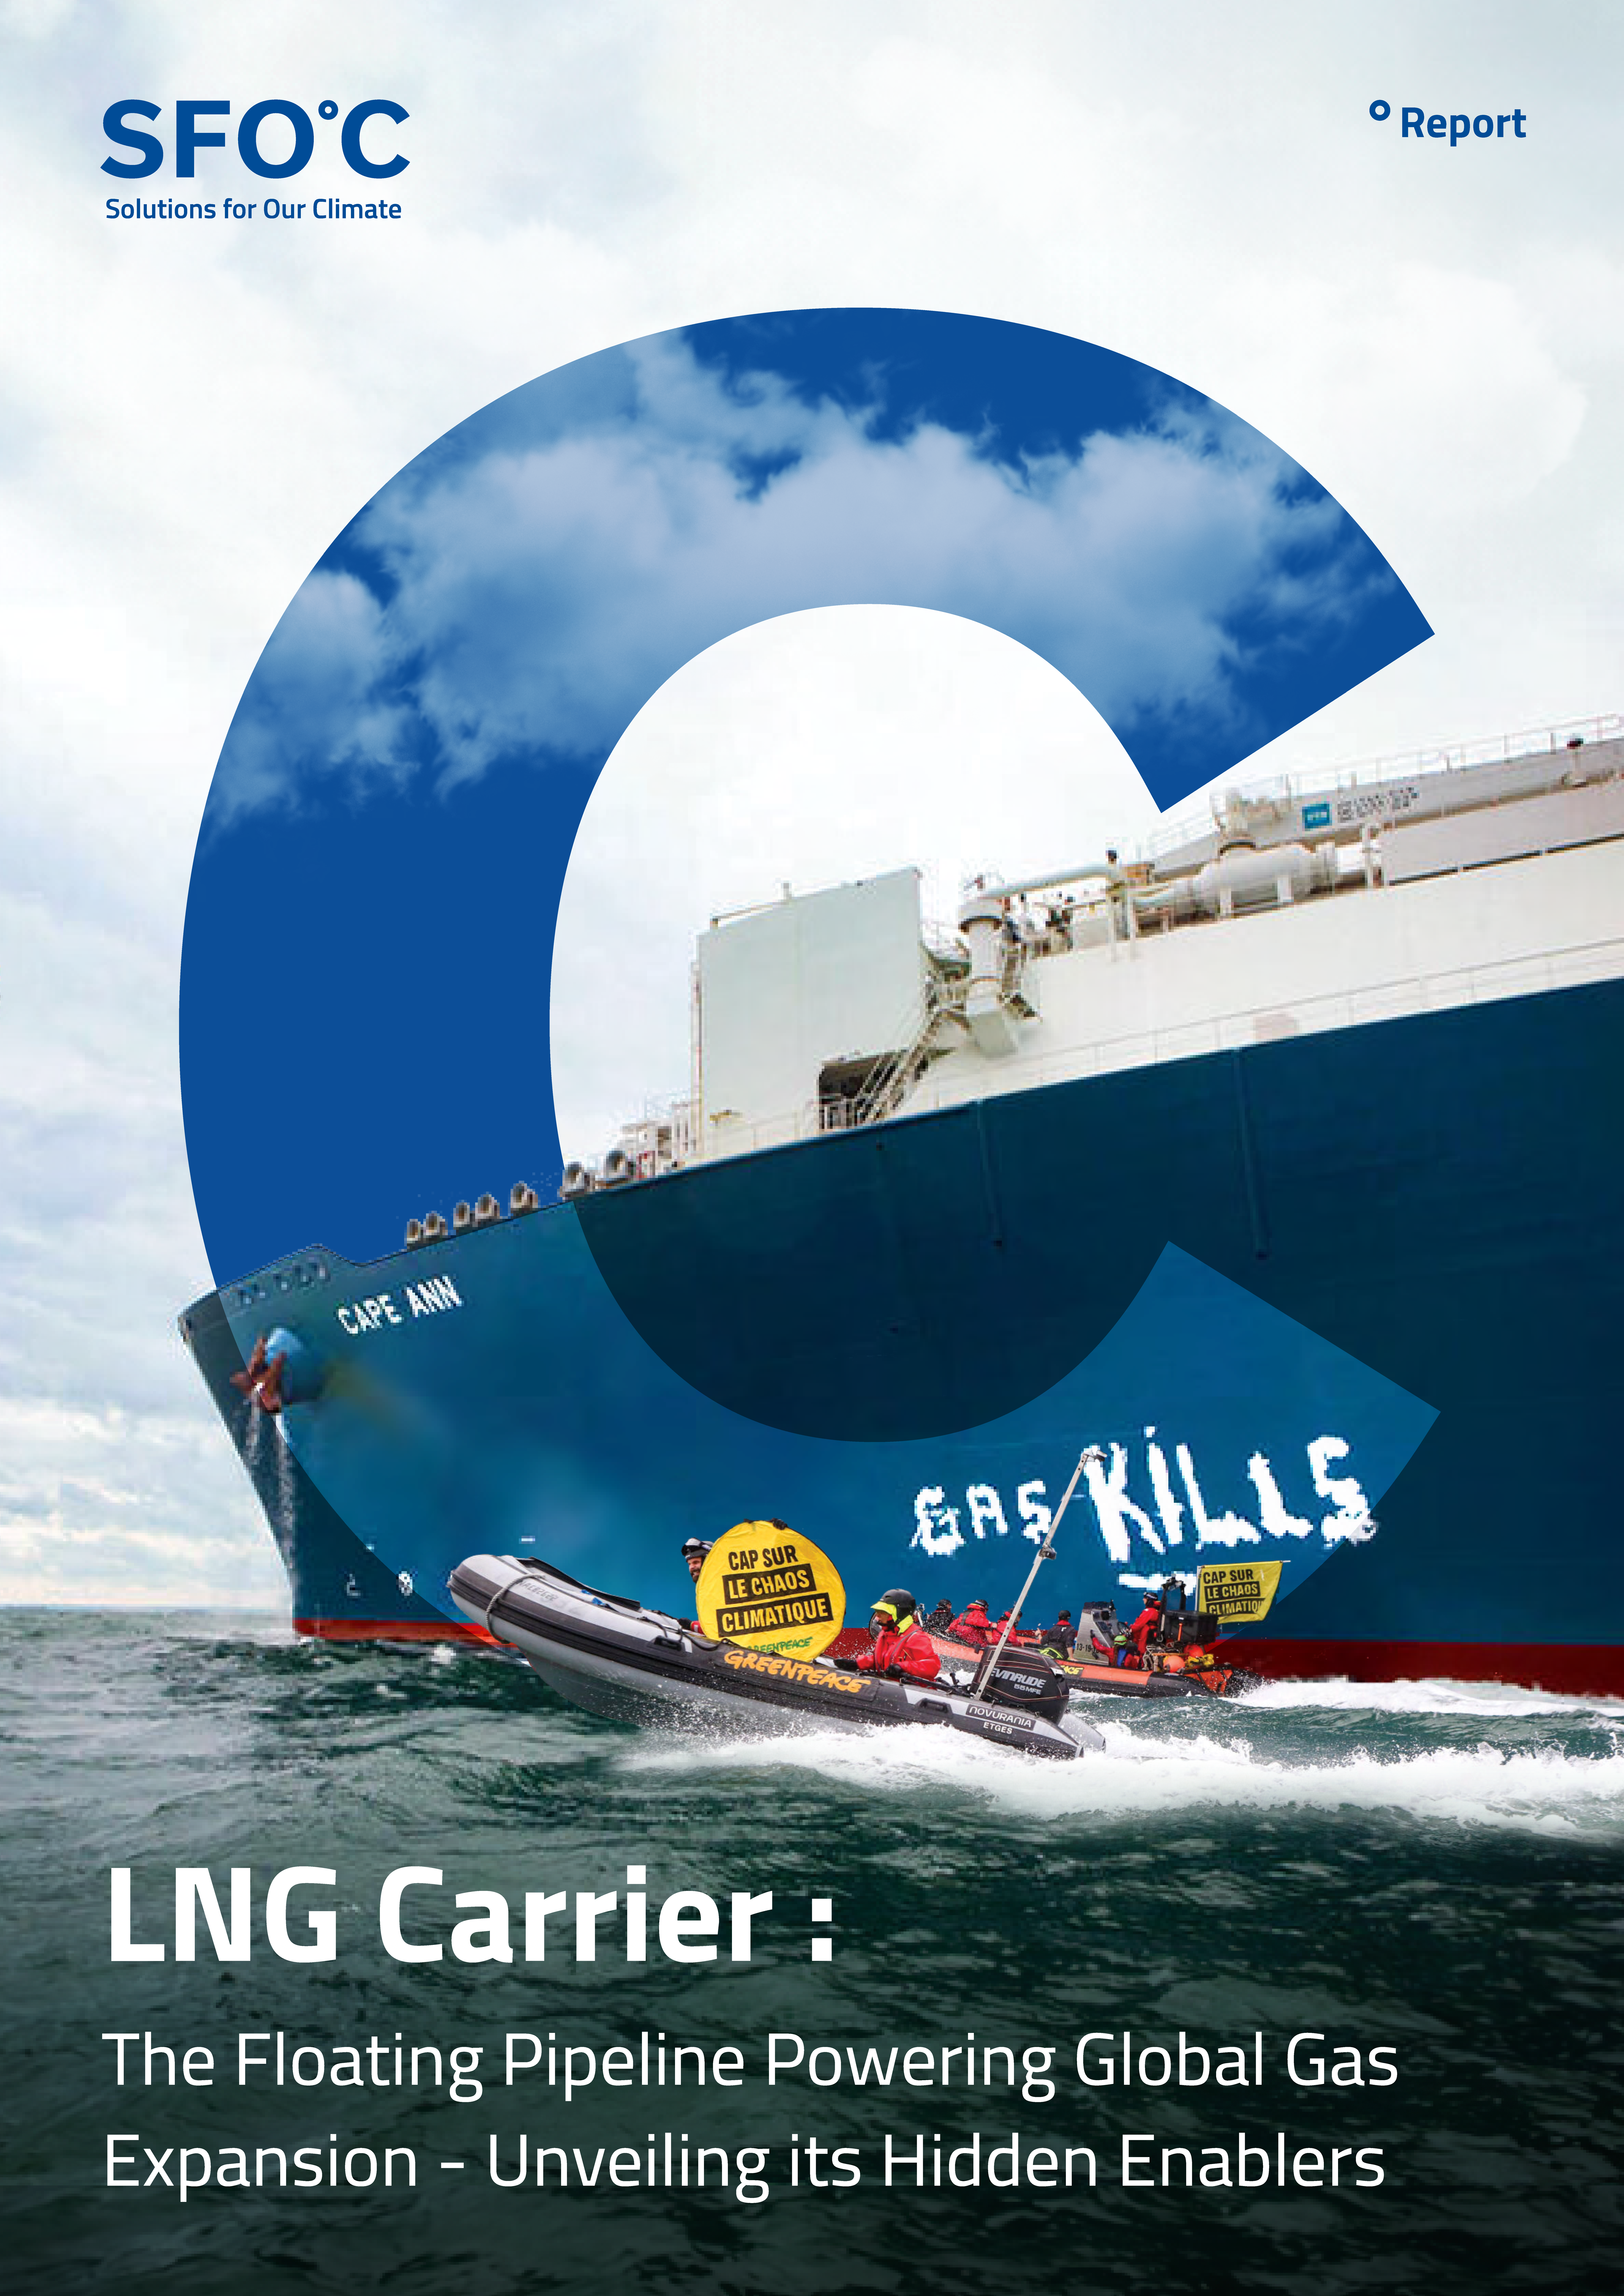 LNG 운반선: 가스 확장의 최전선 뒤 숨겨진 산업